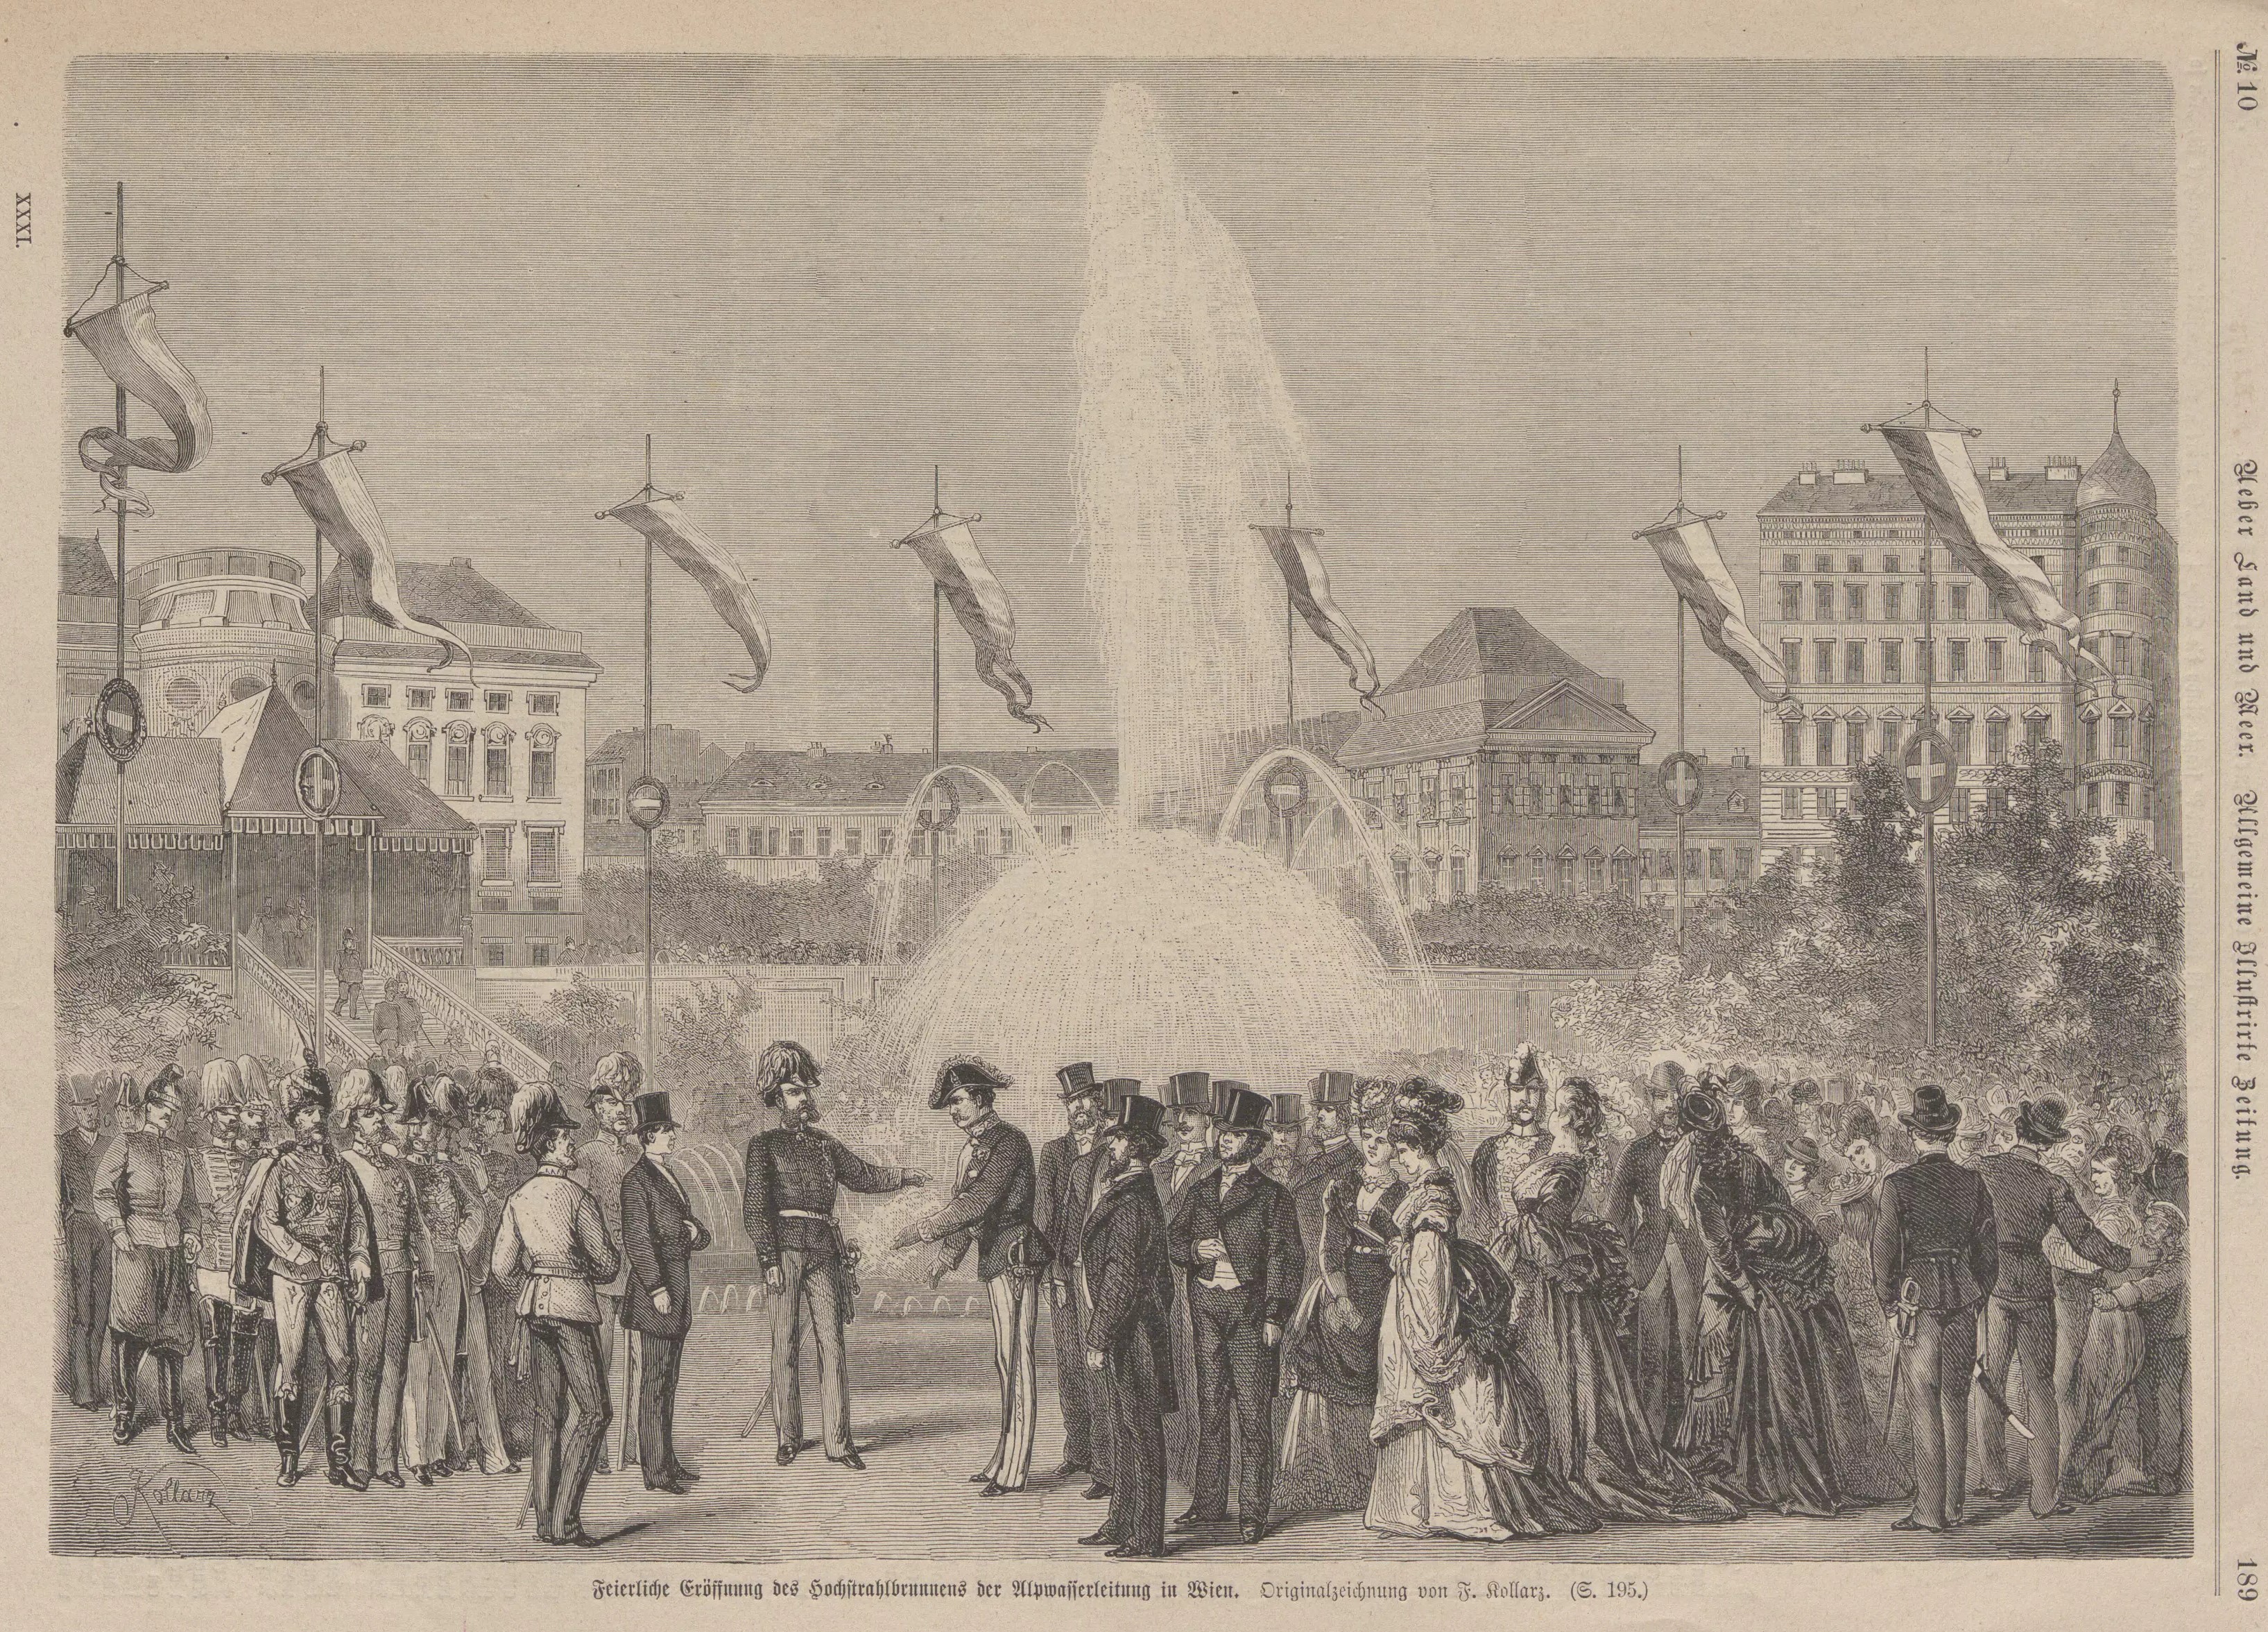 Fuente de chorro alto para la inauguración de la tubería de agua del manantial de Viena 24.10.1873